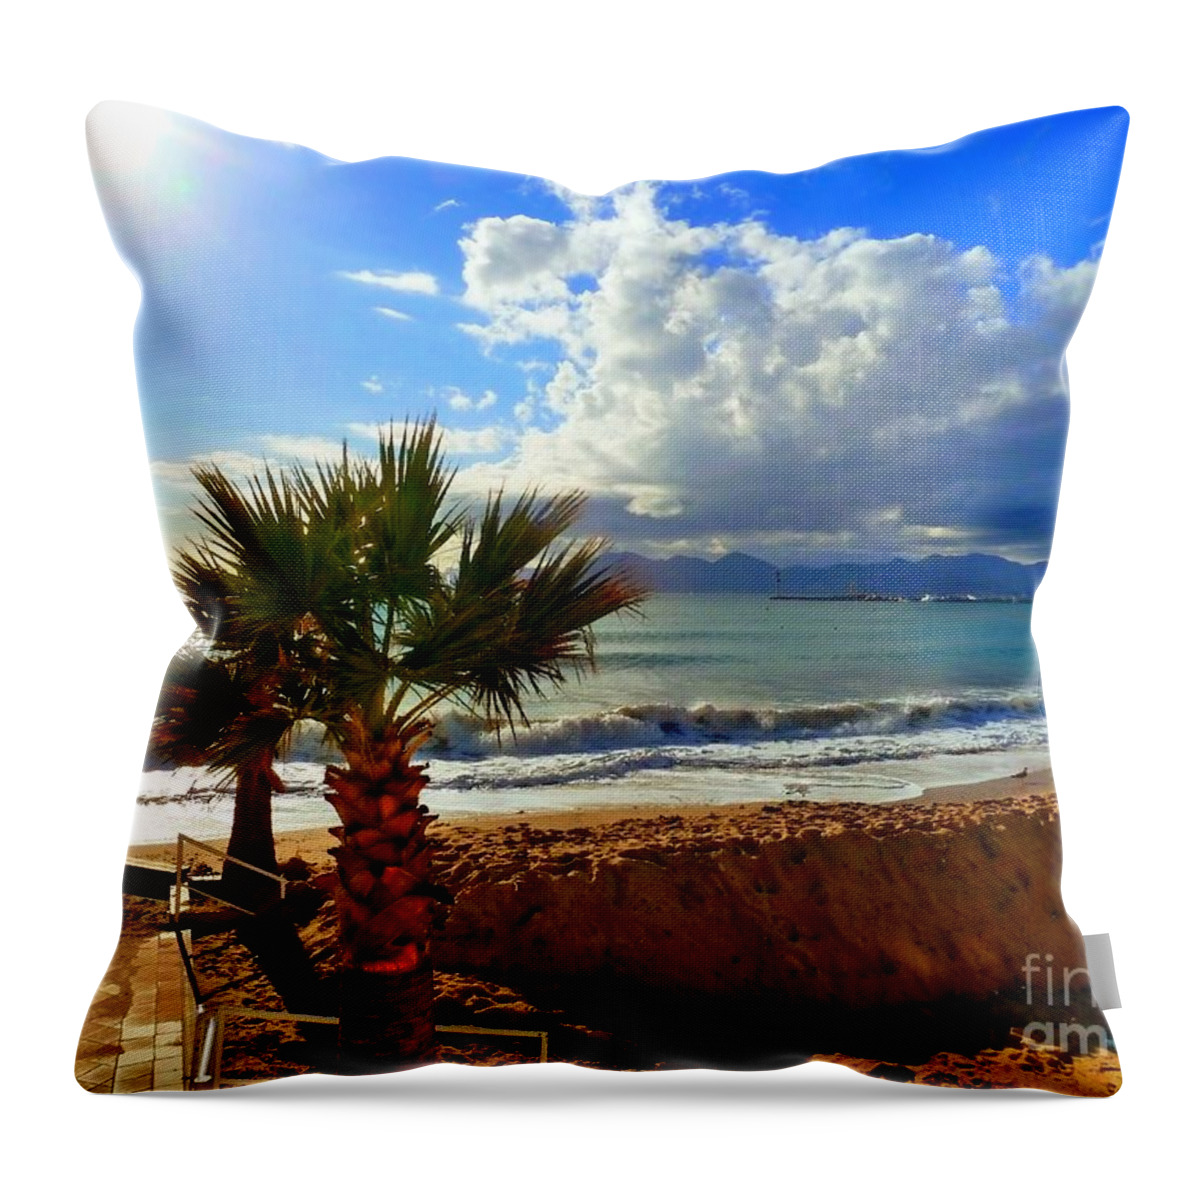 Carlton Beach Throw Pillow featuring the photograph Carlton Beach Cannes by Rogerio Mariani